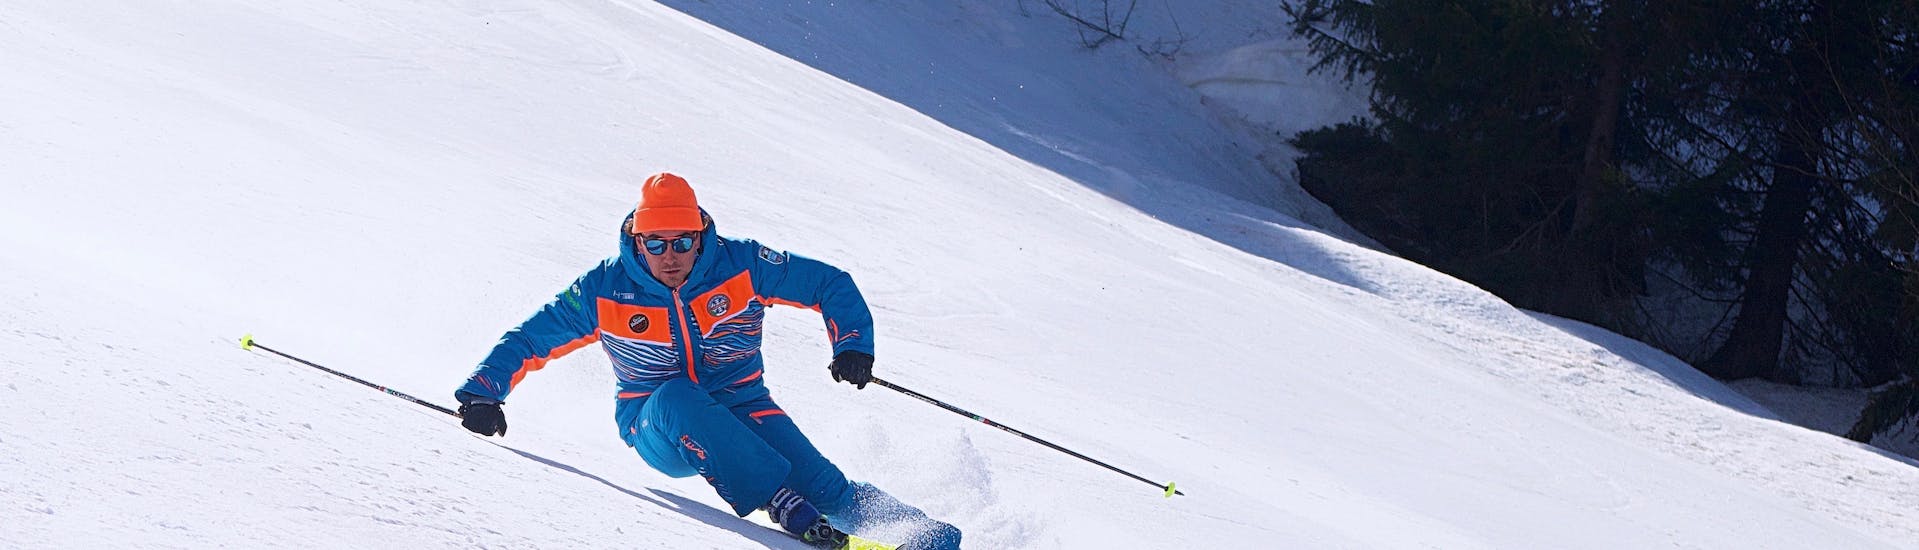 Cours de ski Adultes dès 16 ans - Avancé.